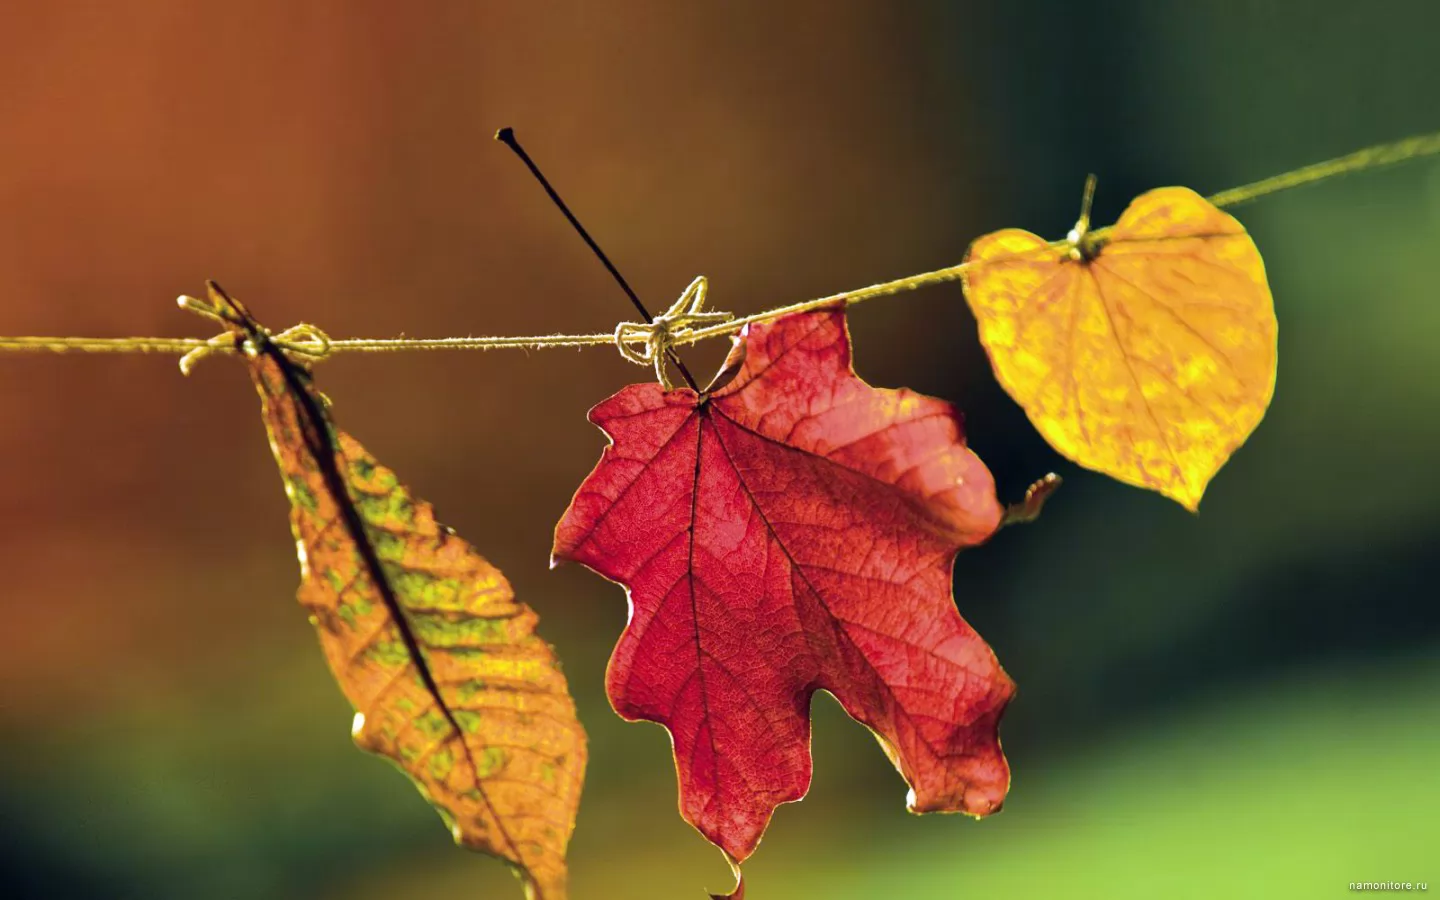 Leaflets, autumn, clipart, nature x